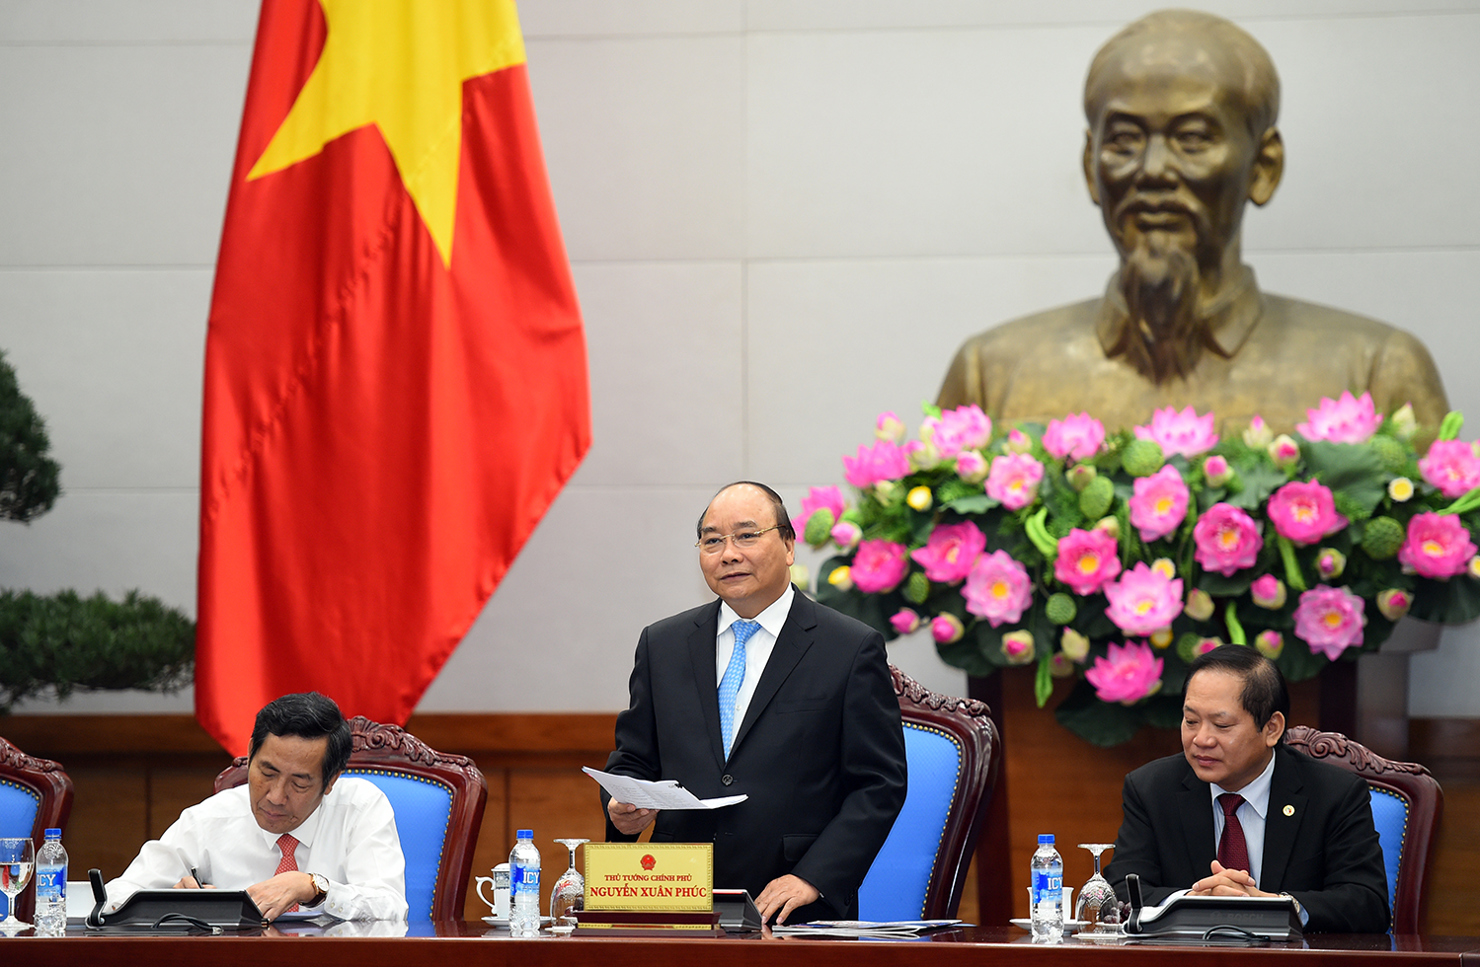 Thủ tướng Nguyễn Xuân Phúc tại buổi gặp mặt với Đoàn báo chí, doanh nghiệp đồng hành cùng APEC nhân dịp kỷ niệm 92 năm Ngày Báo chí Cách mạng Việt Nam. Nguồn: VGP